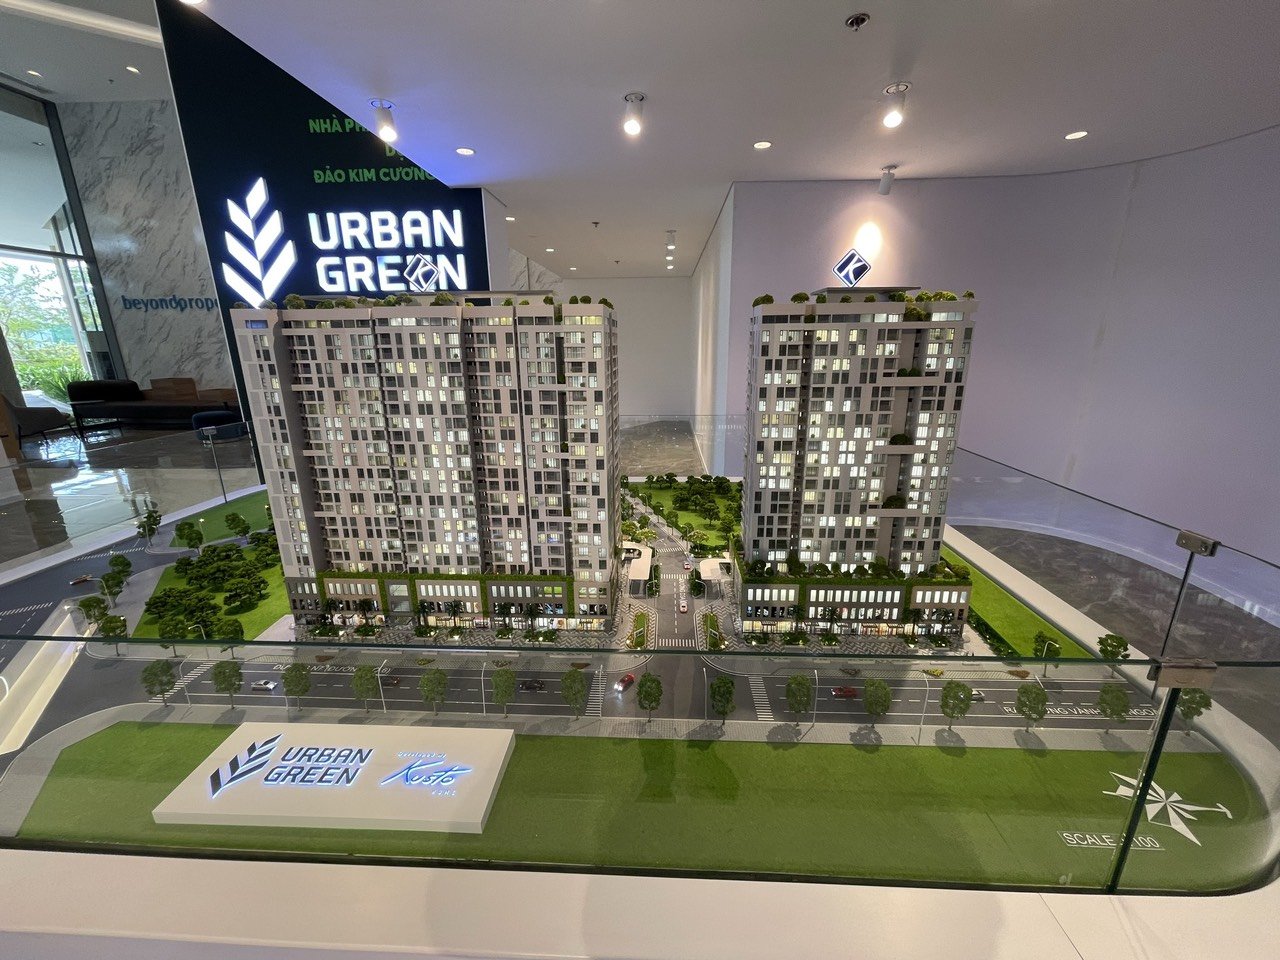 Bán căn hộ 1 PN Urban Green tầng cao giá tốt trong tháng 10 LH 0835379247 gặp Phúc 1